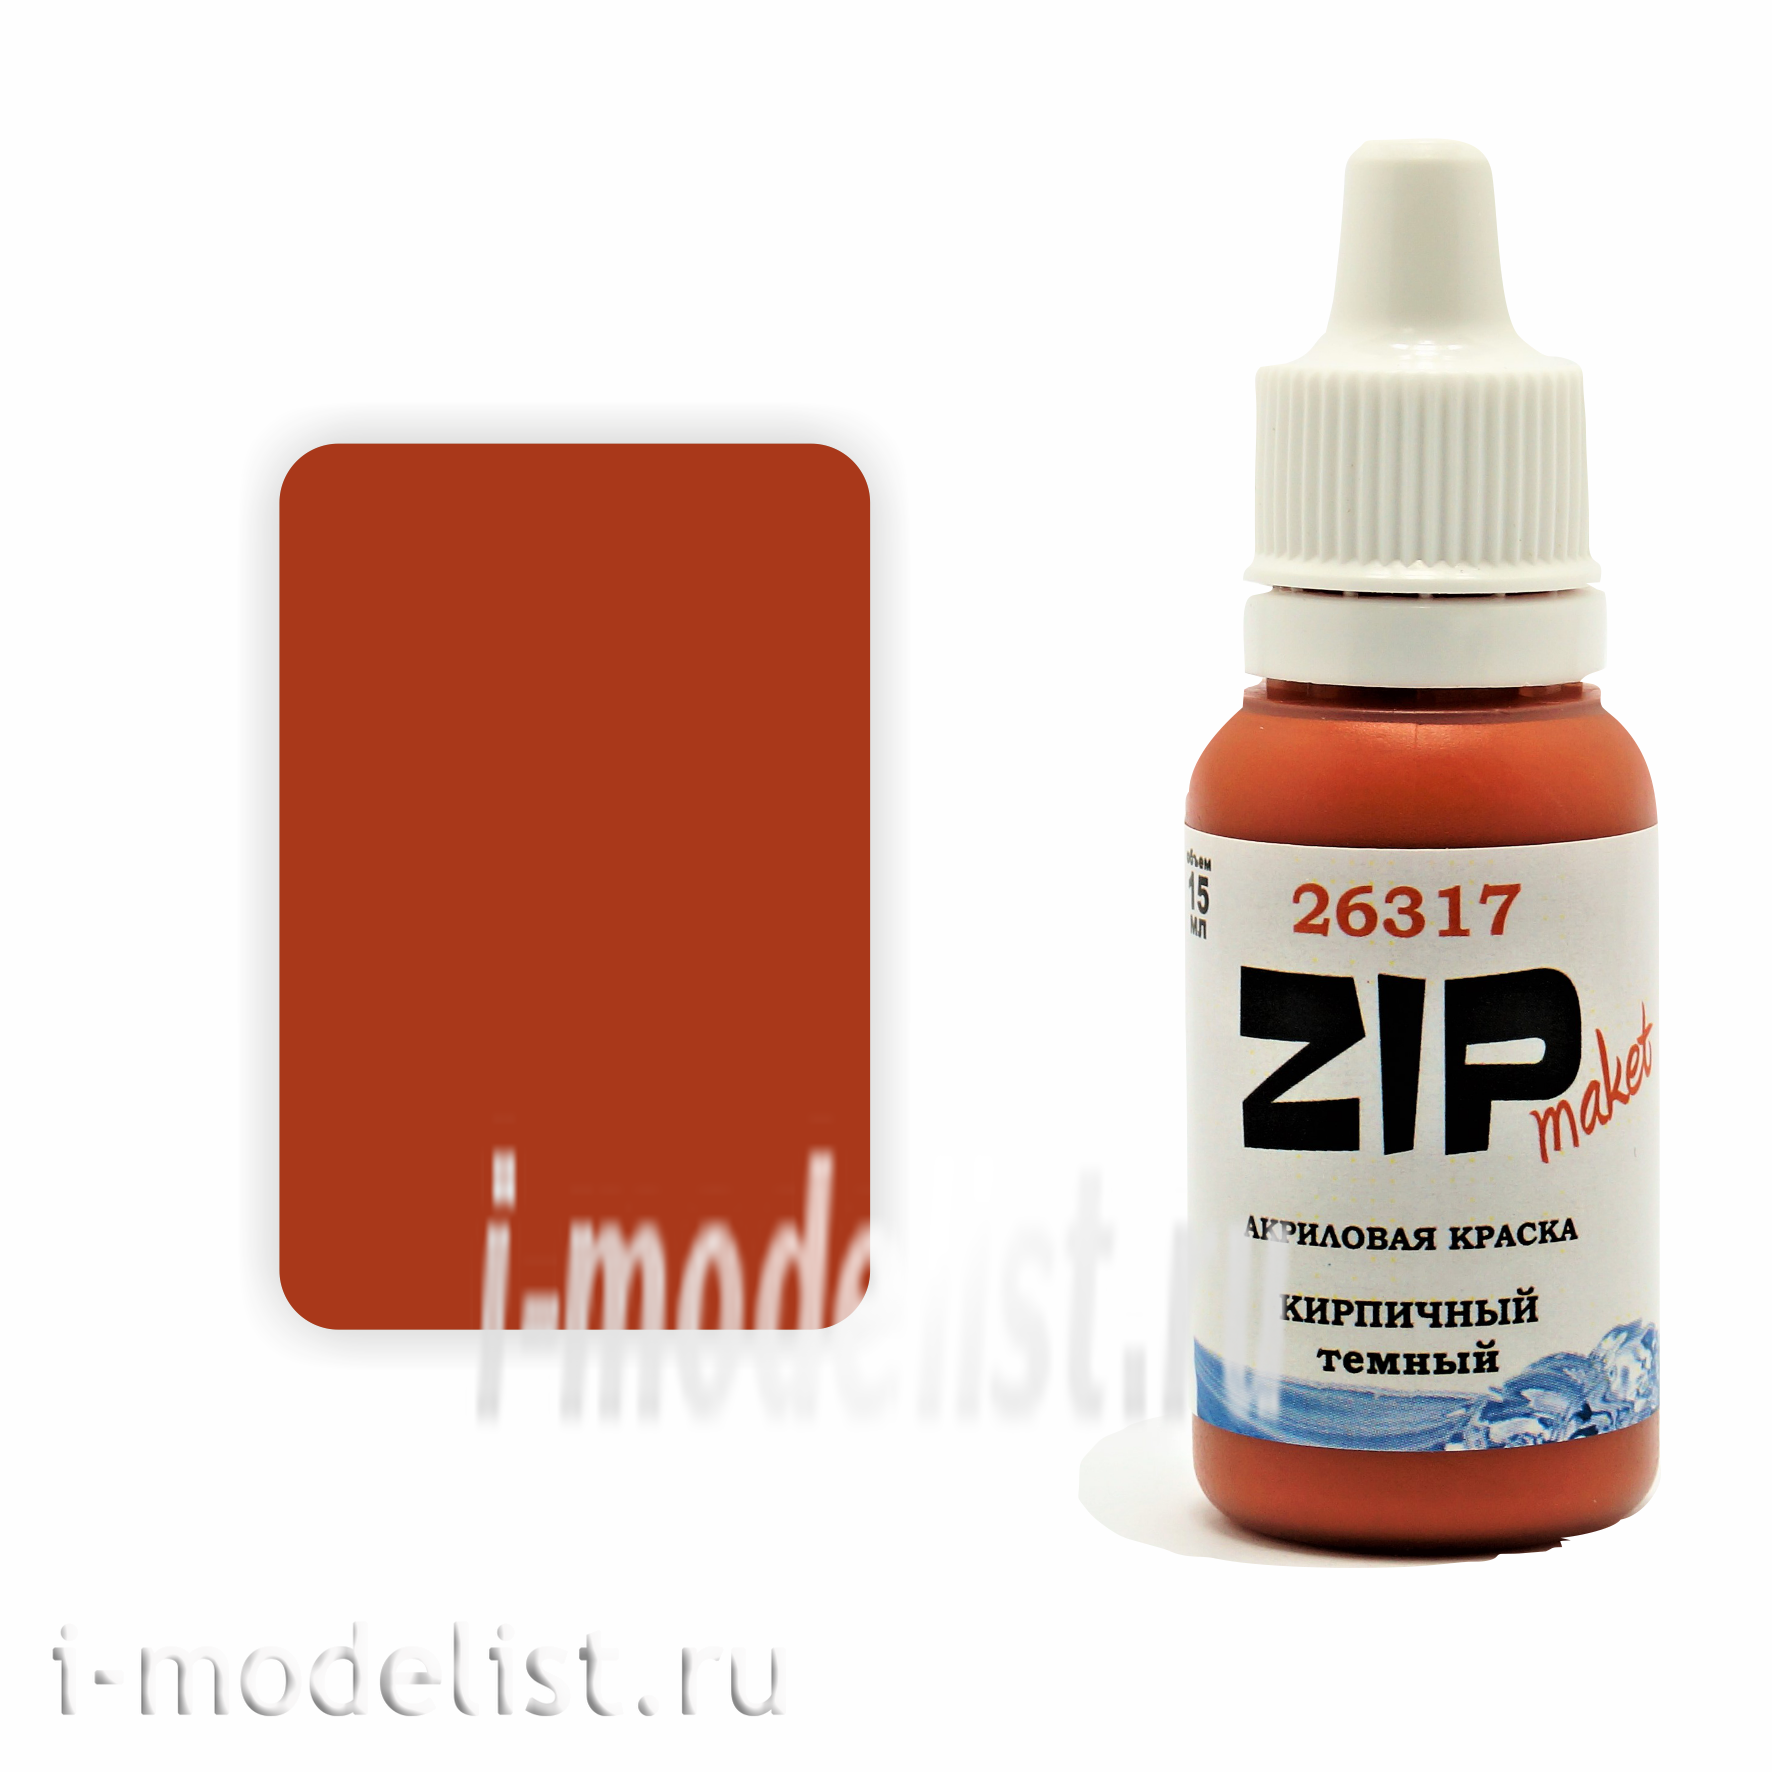 26317 ZIPMaket Paint model BRICK dark